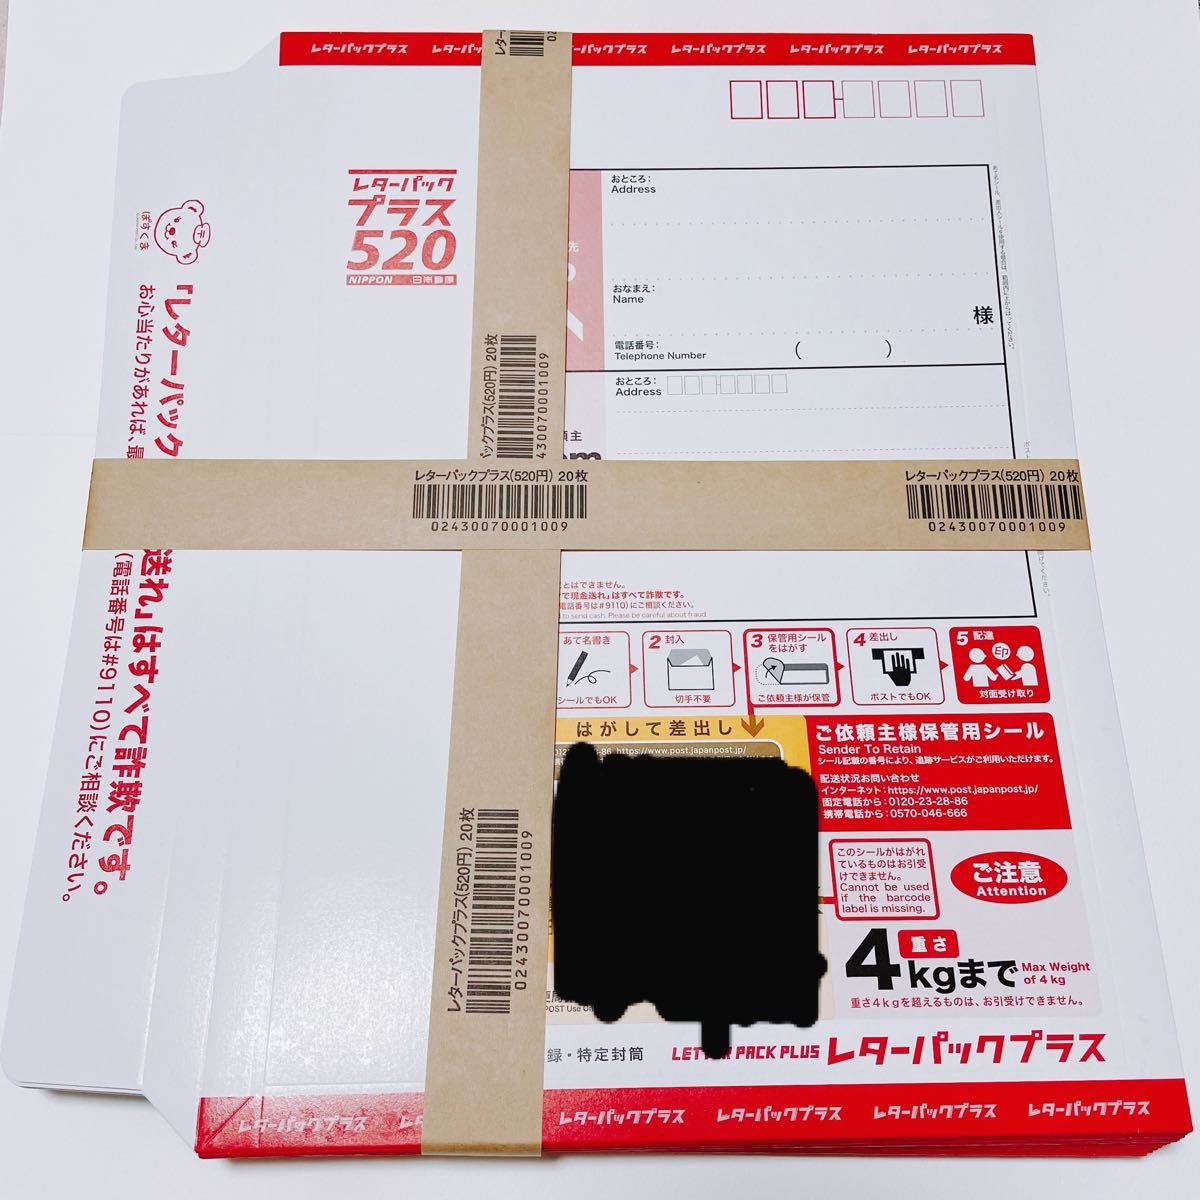 超人気 専門店 日本郵便 レターパックプラス 20枚セット asakusa.sub.jp